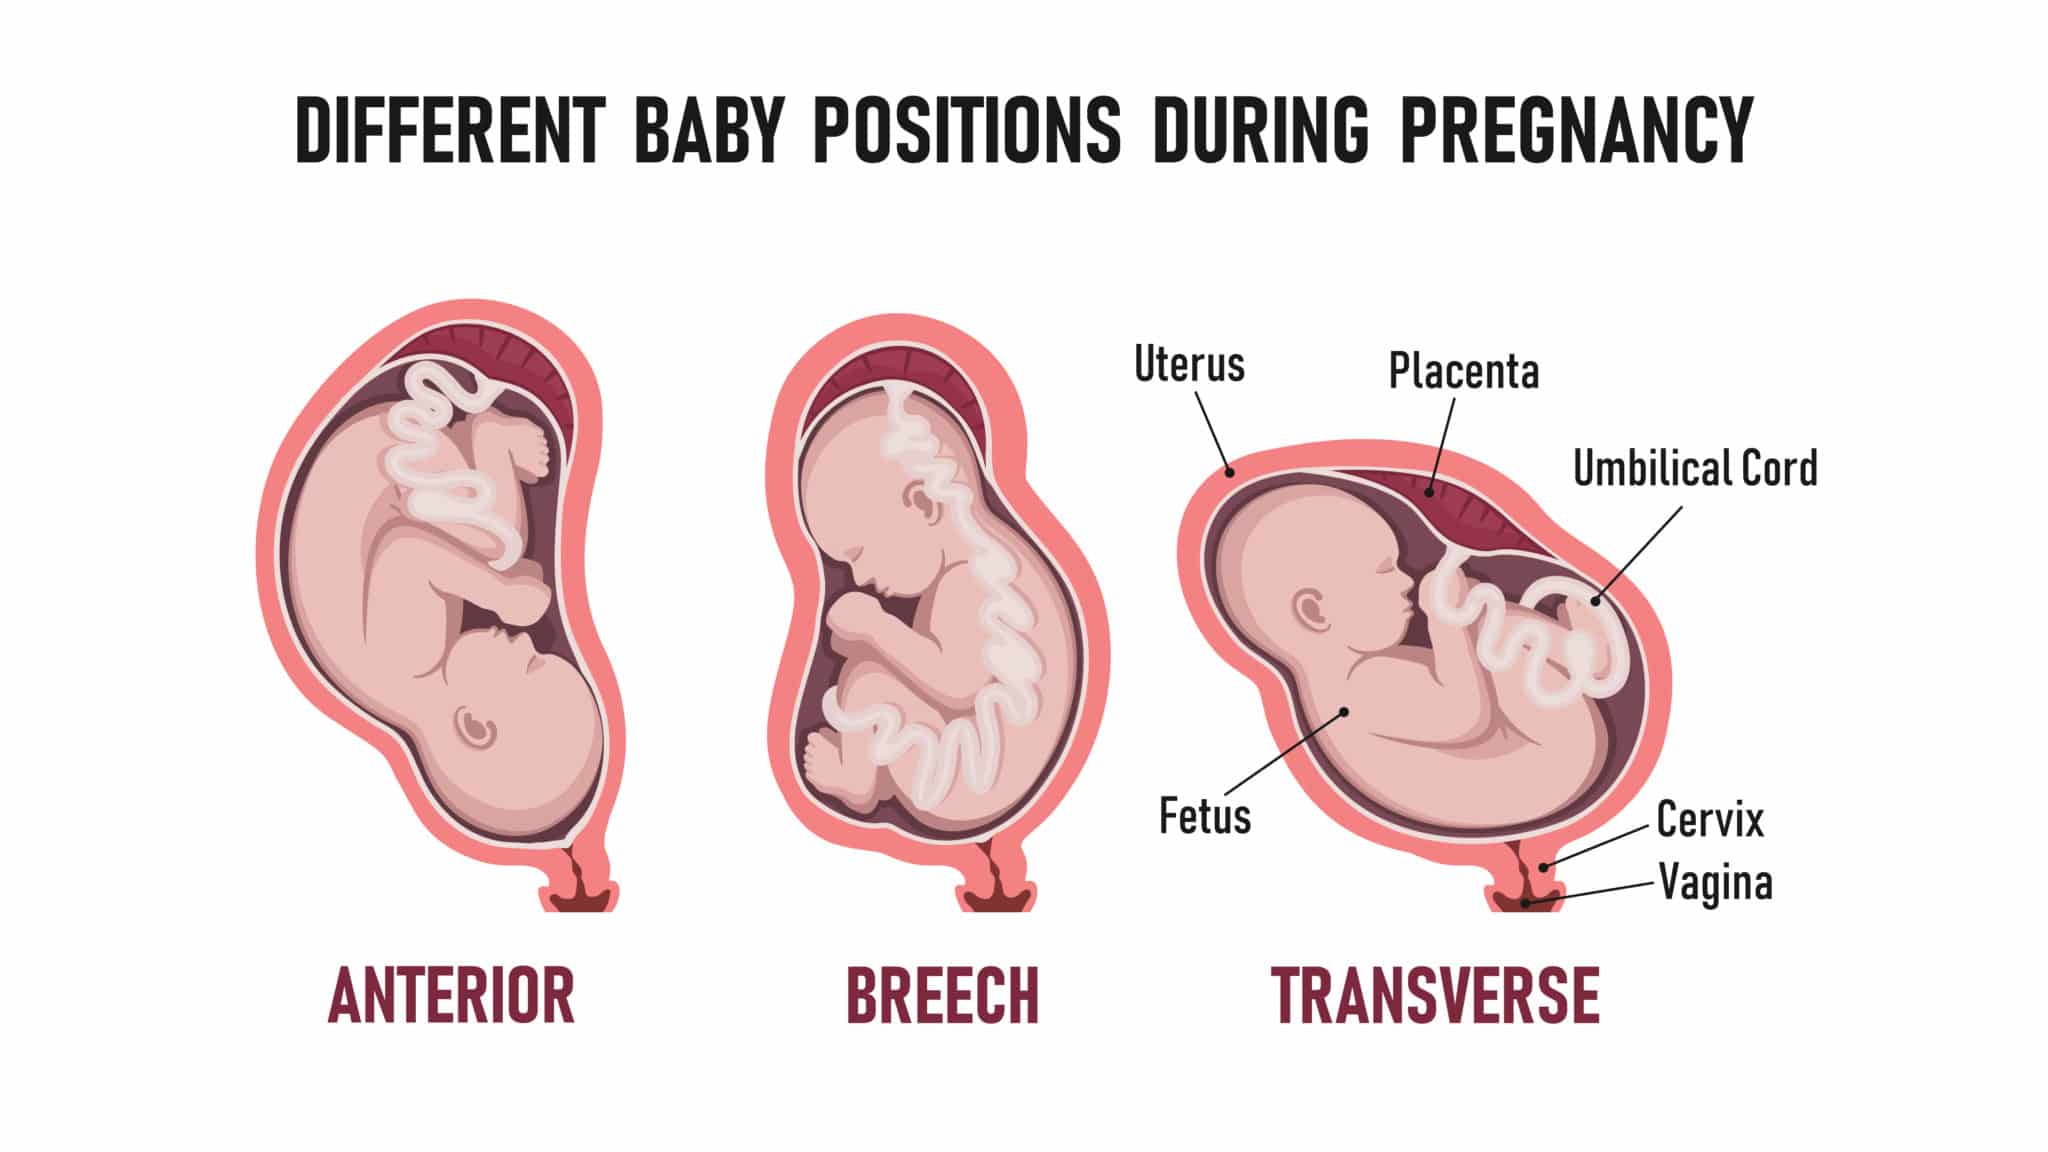 fetus in transverse presentation